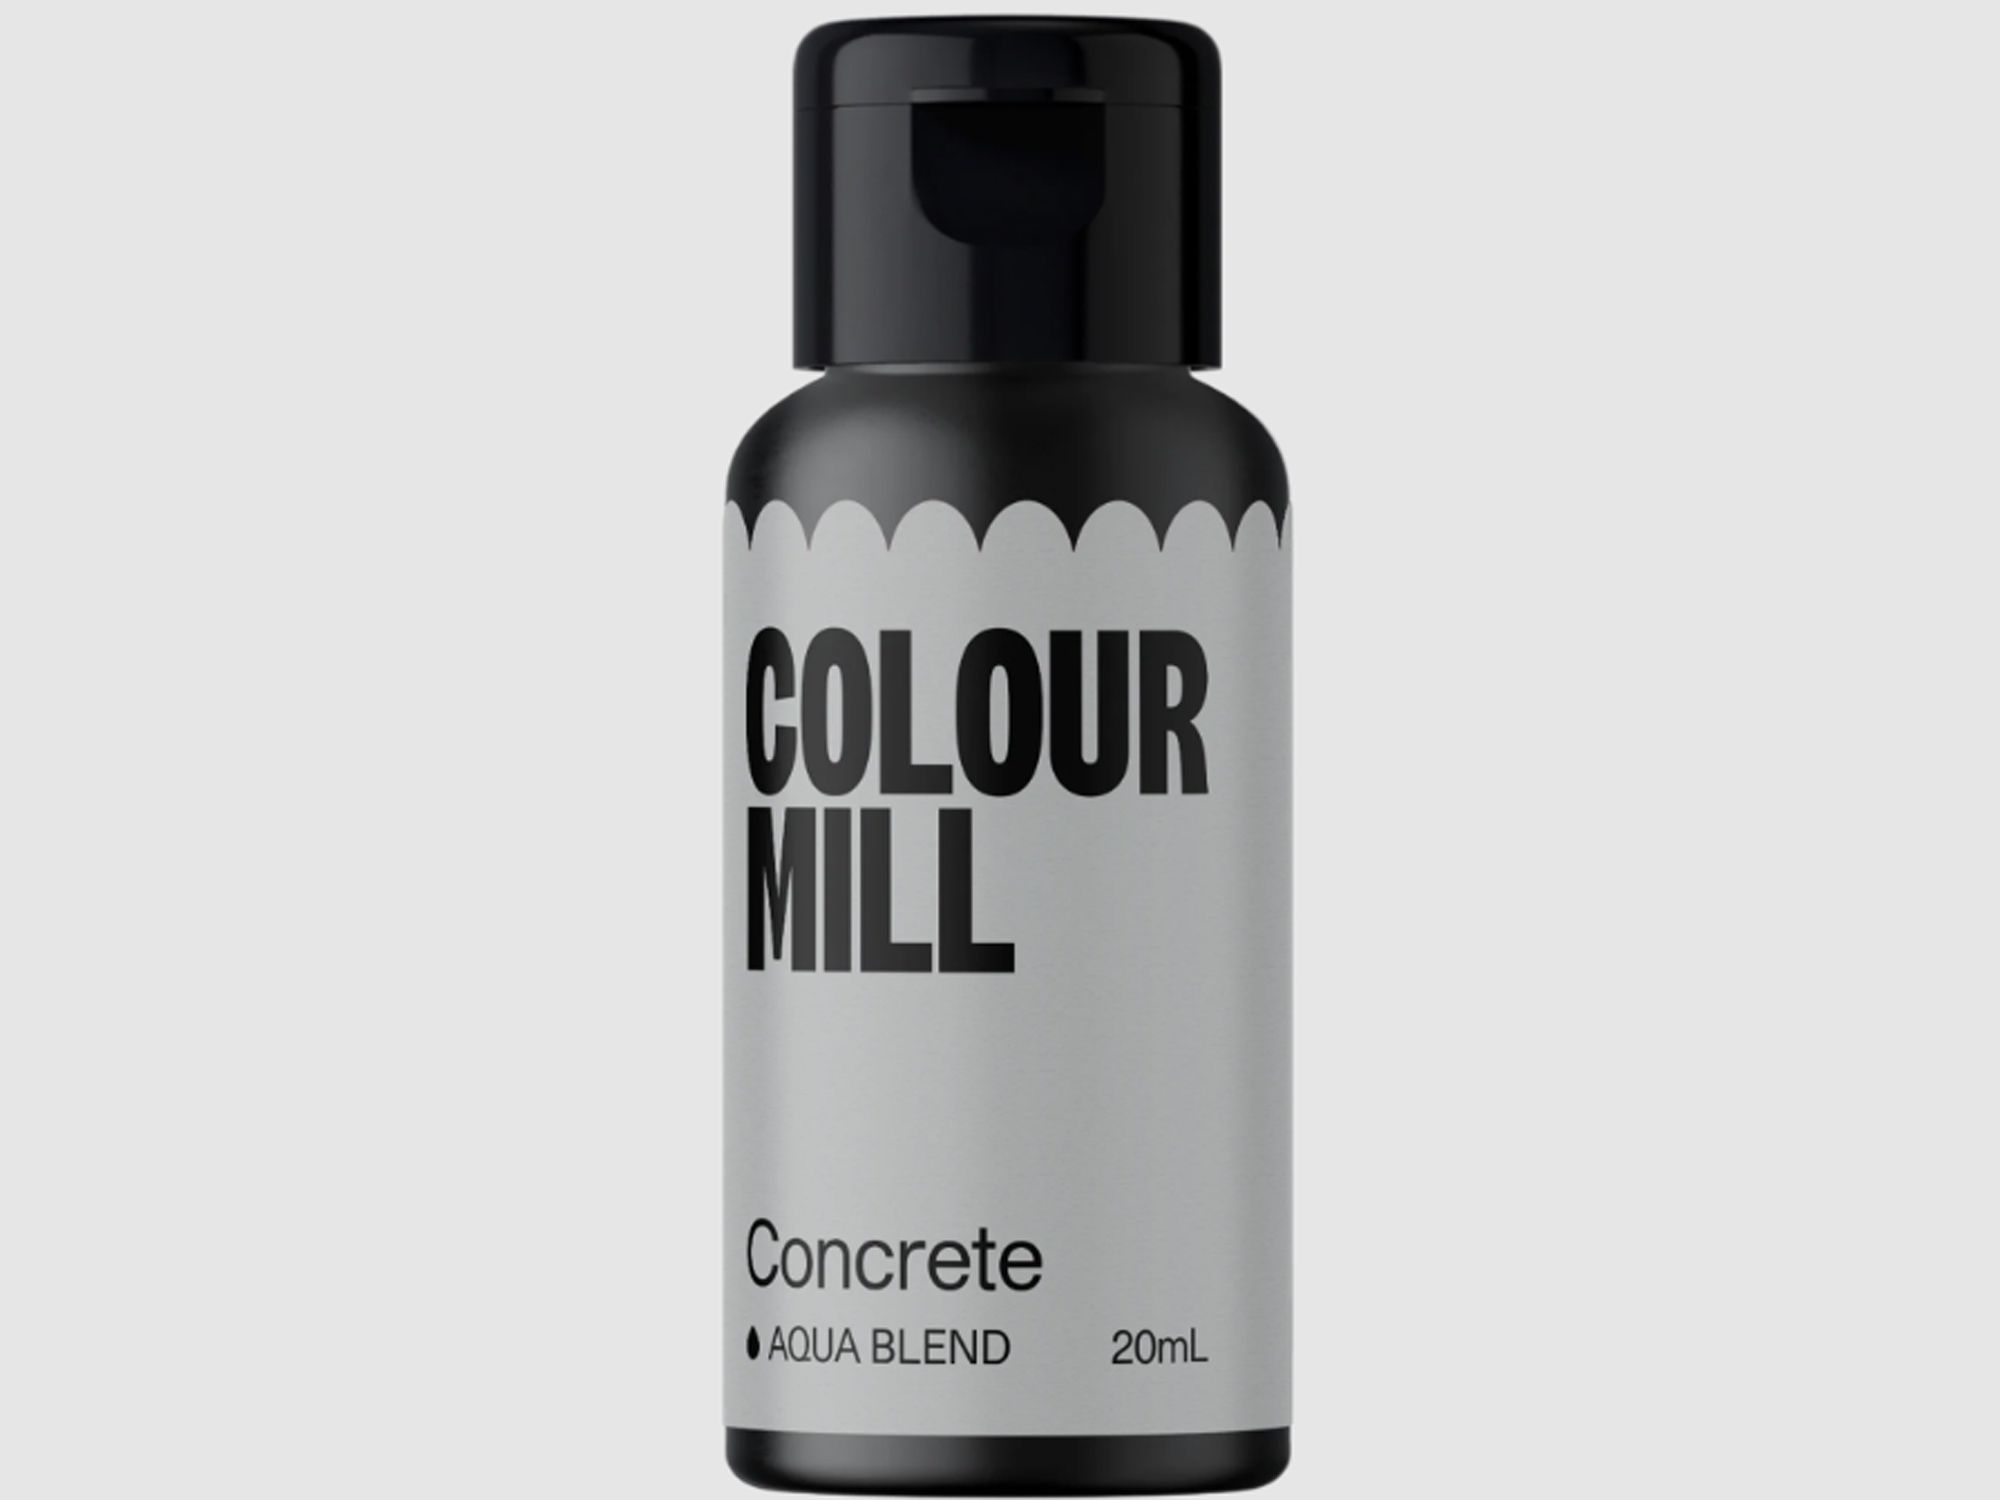 Colour Mill Concrete (Aqua Blend) 20ml